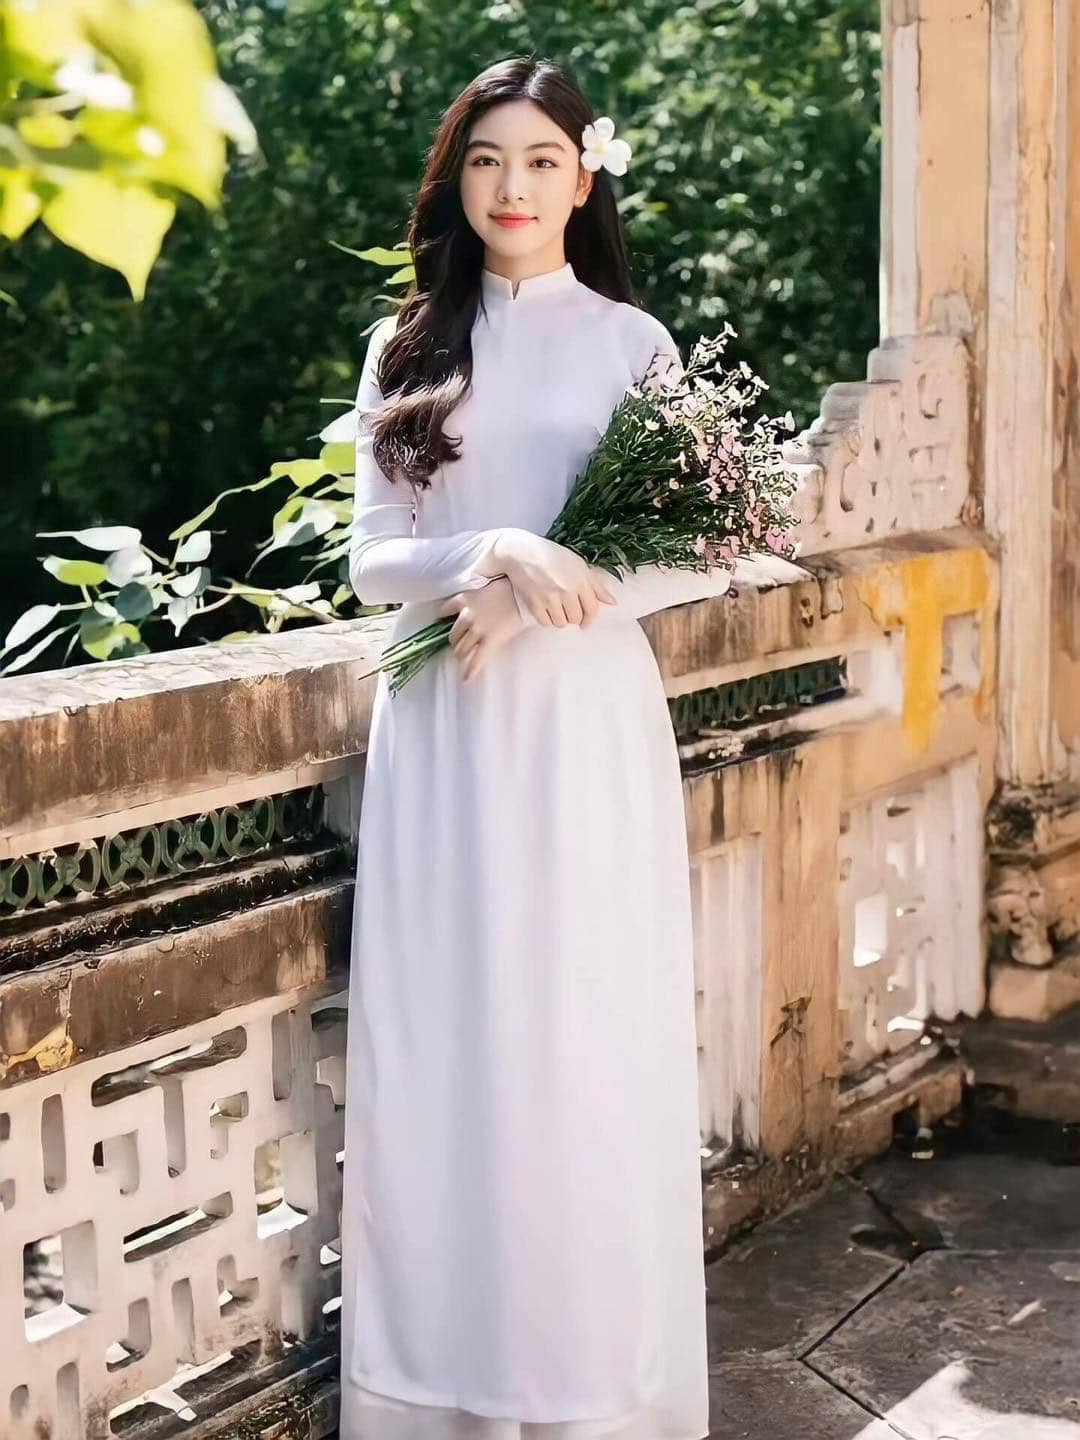 Con gái Quyền Linh lại gây sốt MXH với bộ ảnh ngọt ngào, kỷ niệm lần đầu chụp quảng cáo chuyên nghiệp - Ảnh 13